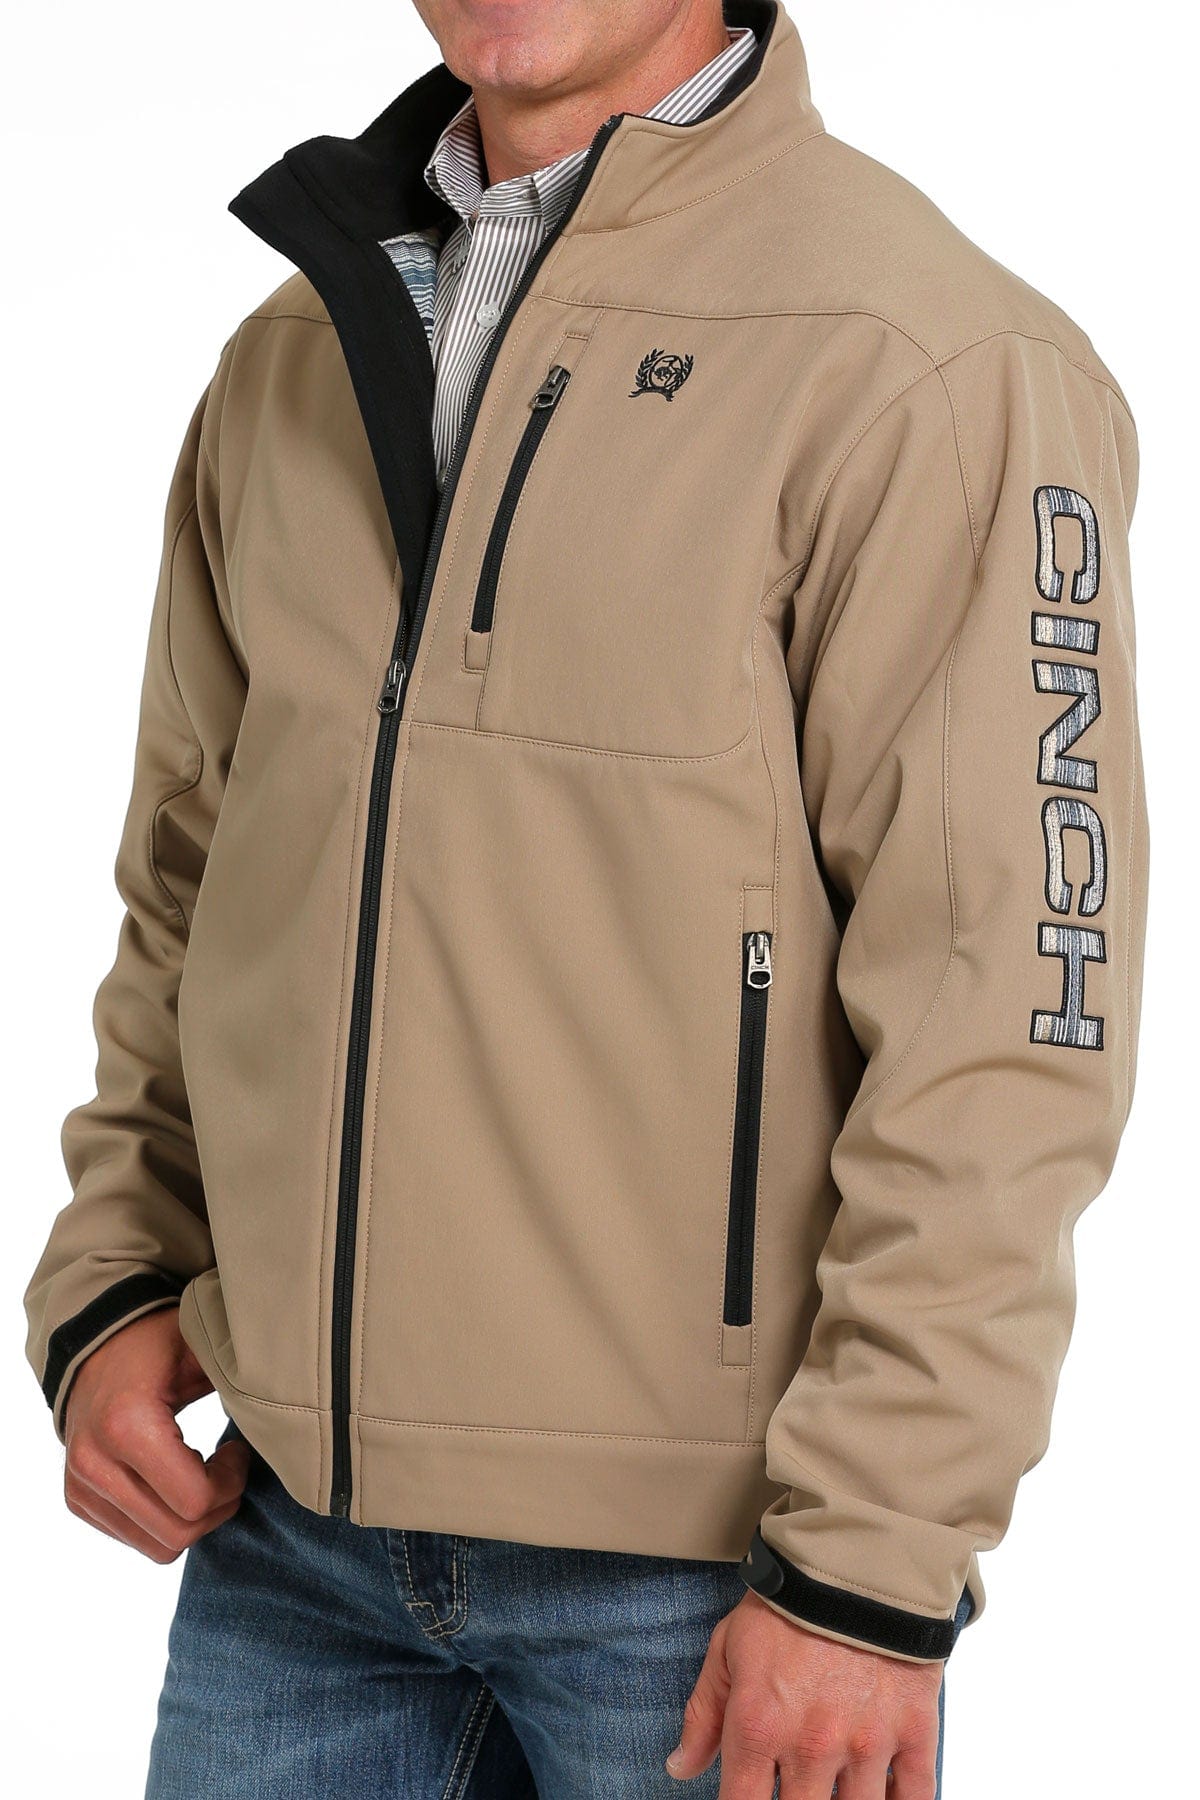 Cinch Men's Tan Softshell Lined Bonded Jacket MWJ1567008 - Russell's  Western Wear, Inc.